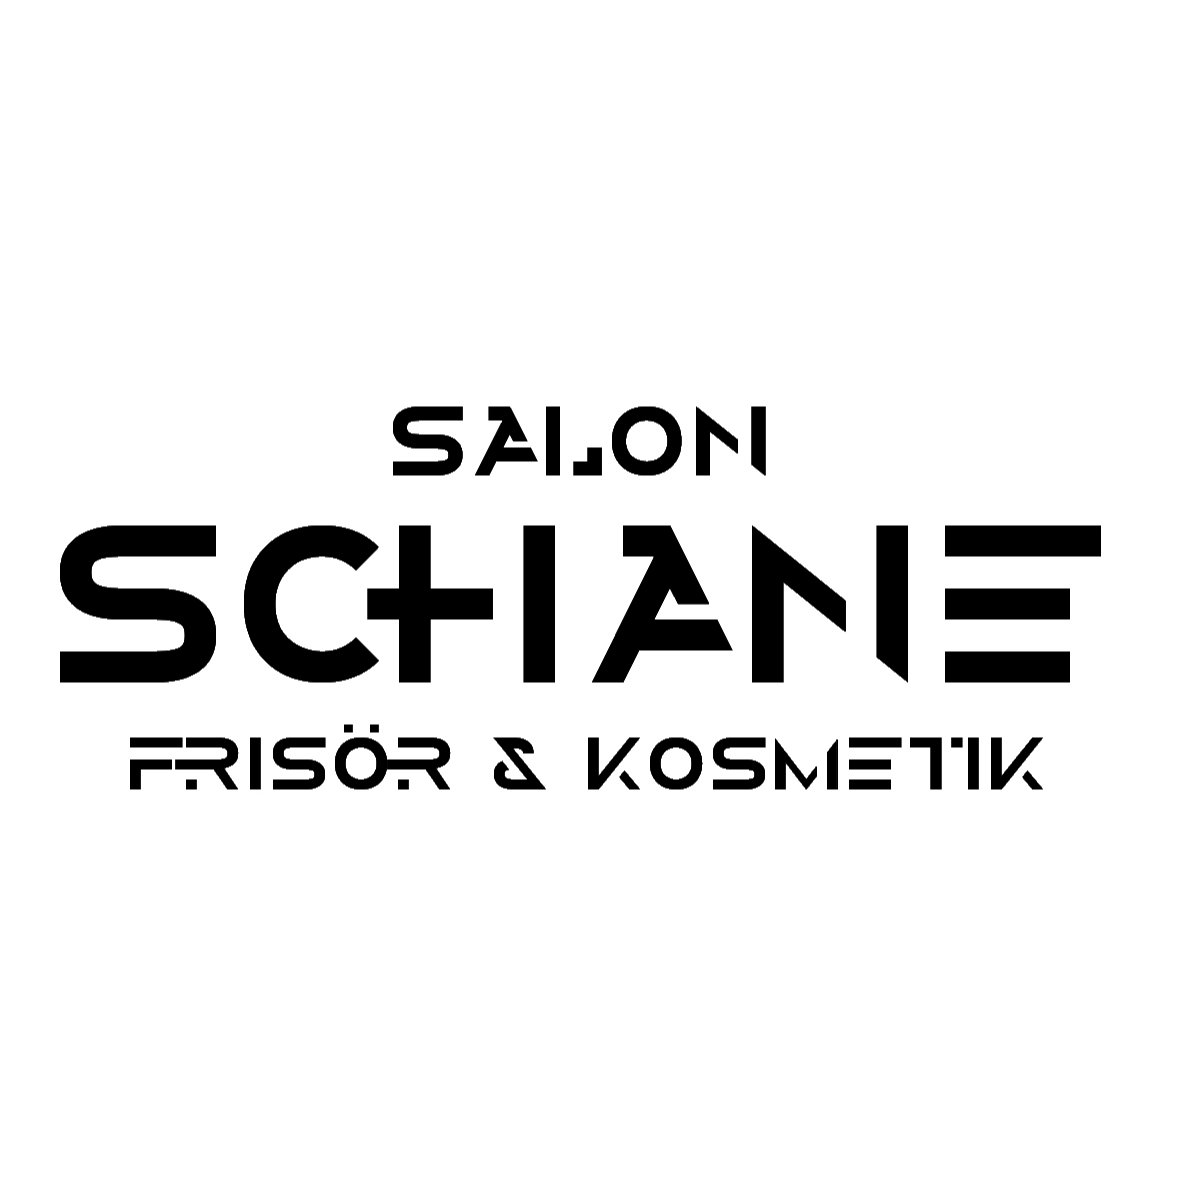 Salon SCHANE - Friseur, Perücken & Kosmetik in Siegen - Logo